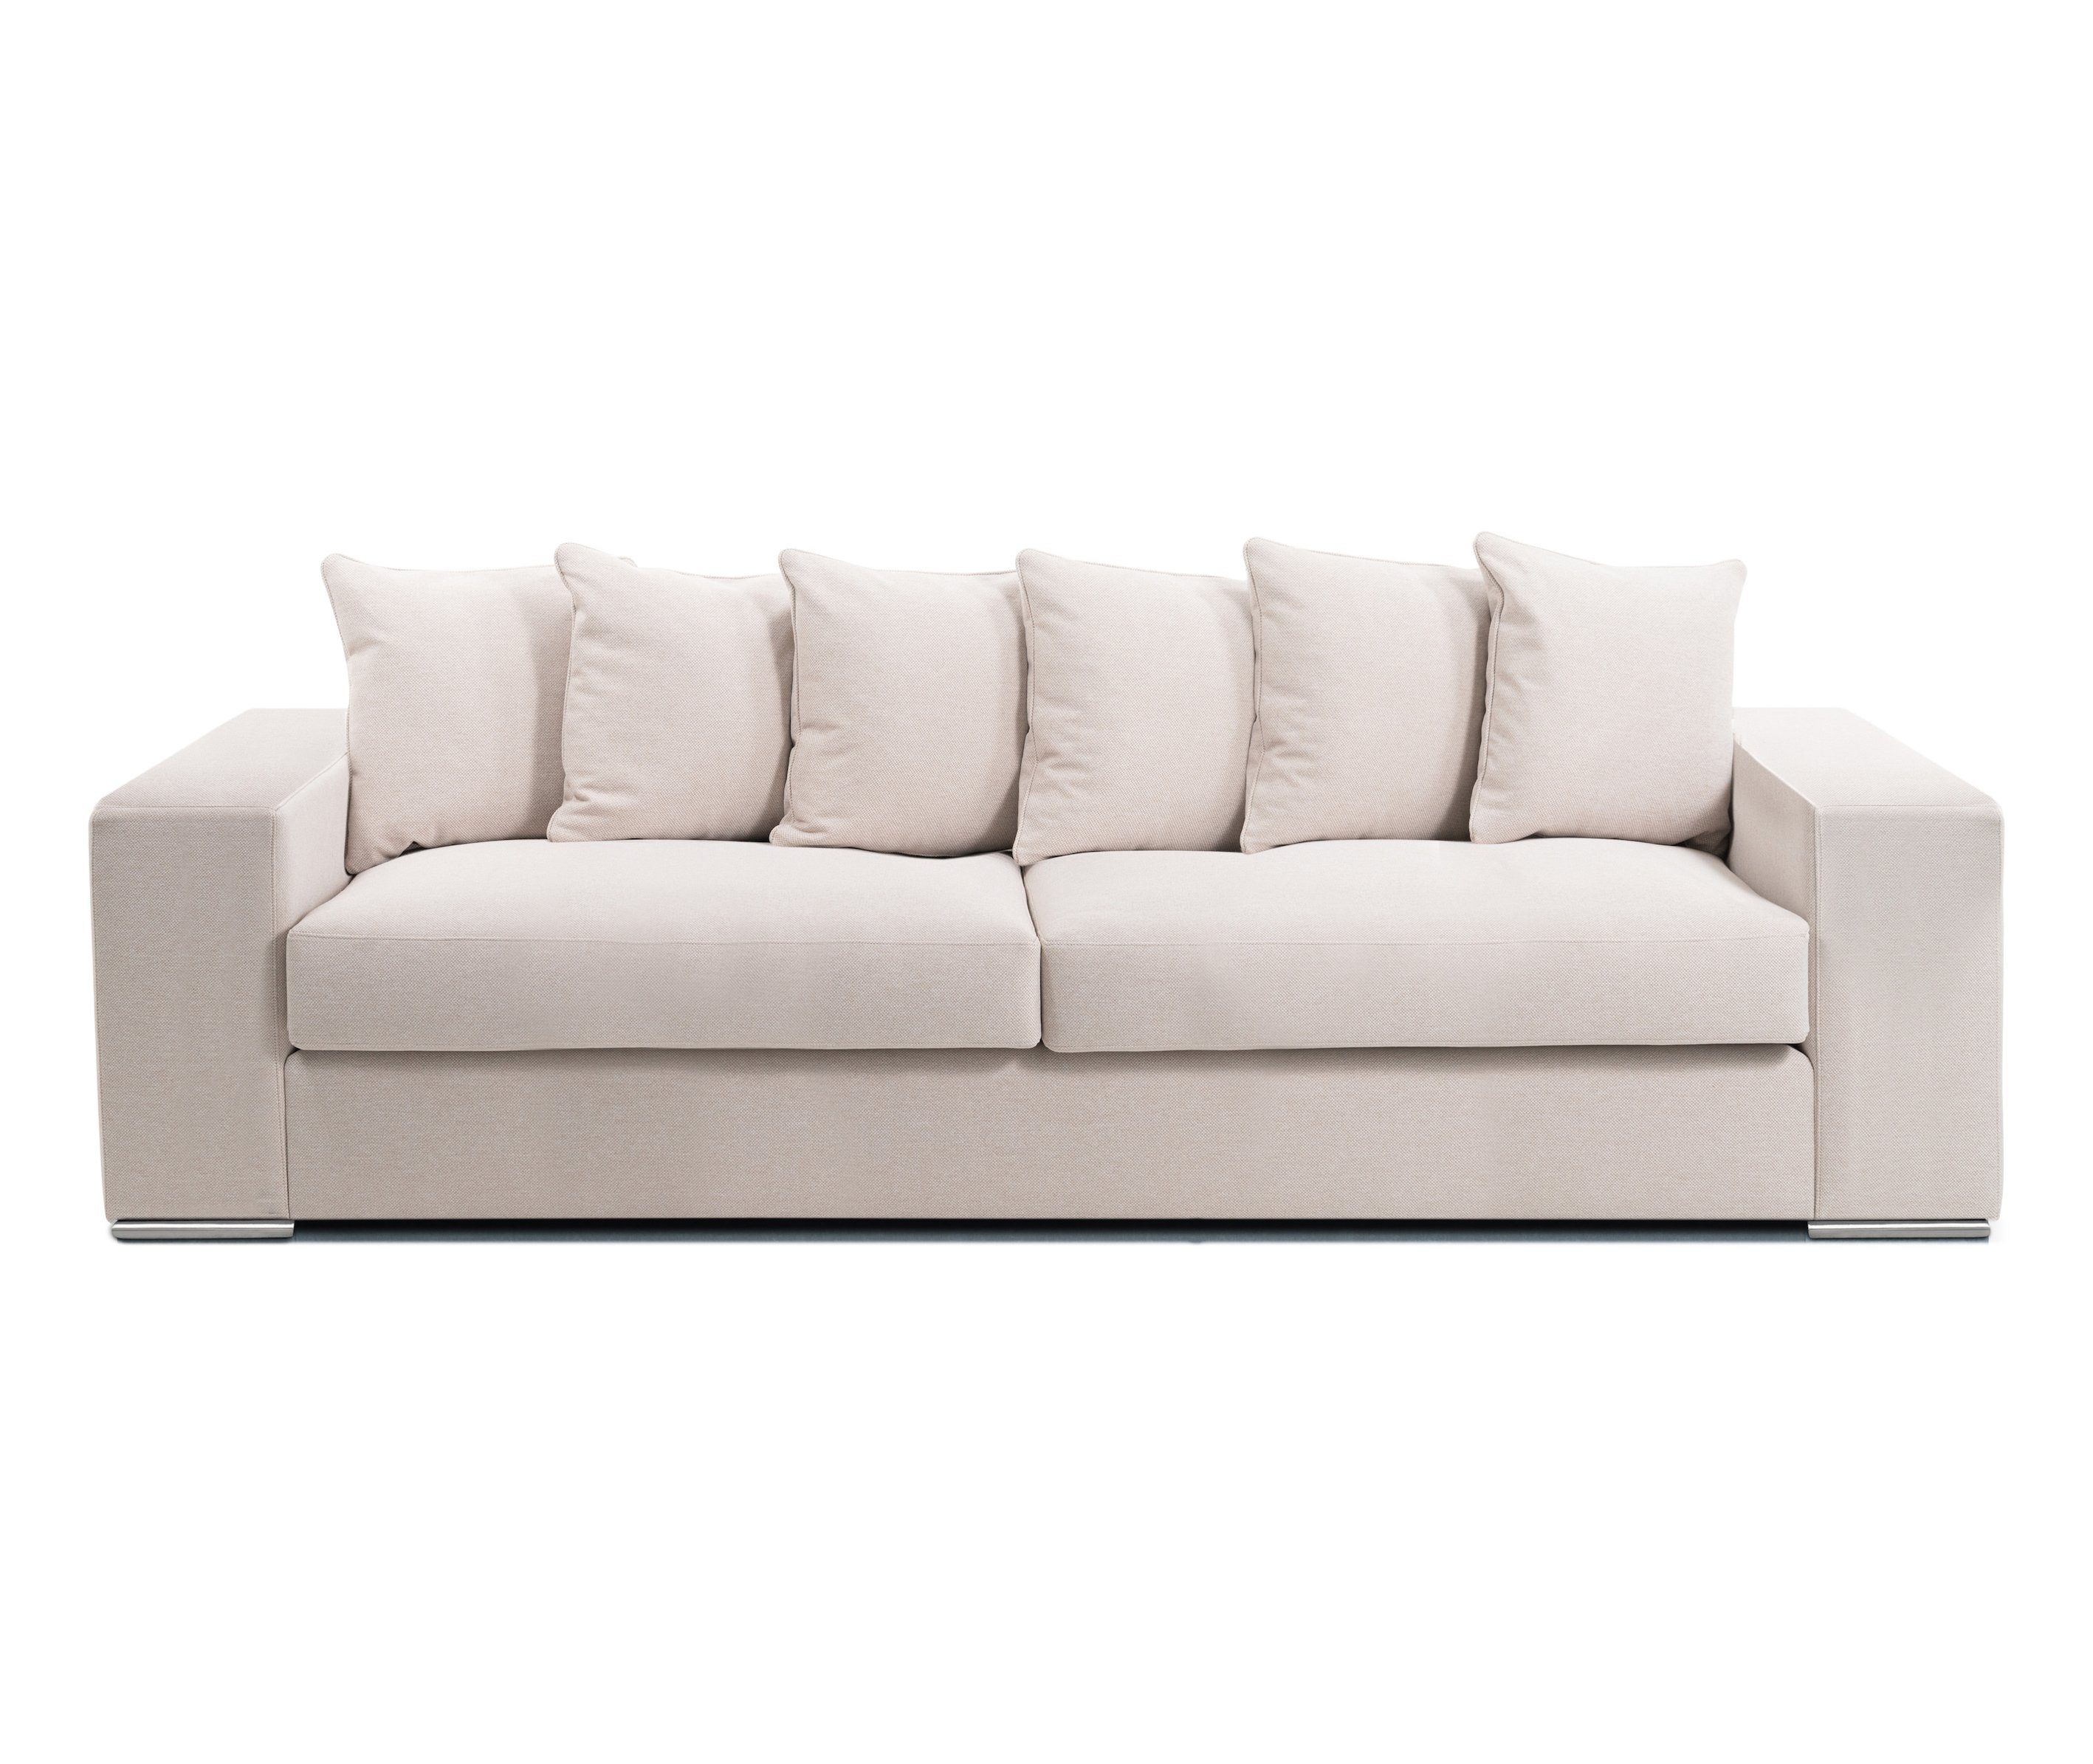 AMARIS Elements Sofa Samt Sofa 'Monroe' 4 Sitzer XL Big Sofa Wohnzimmer Couch in 4 Größen, Made in Europe Beige/Greige(Wolloptik)